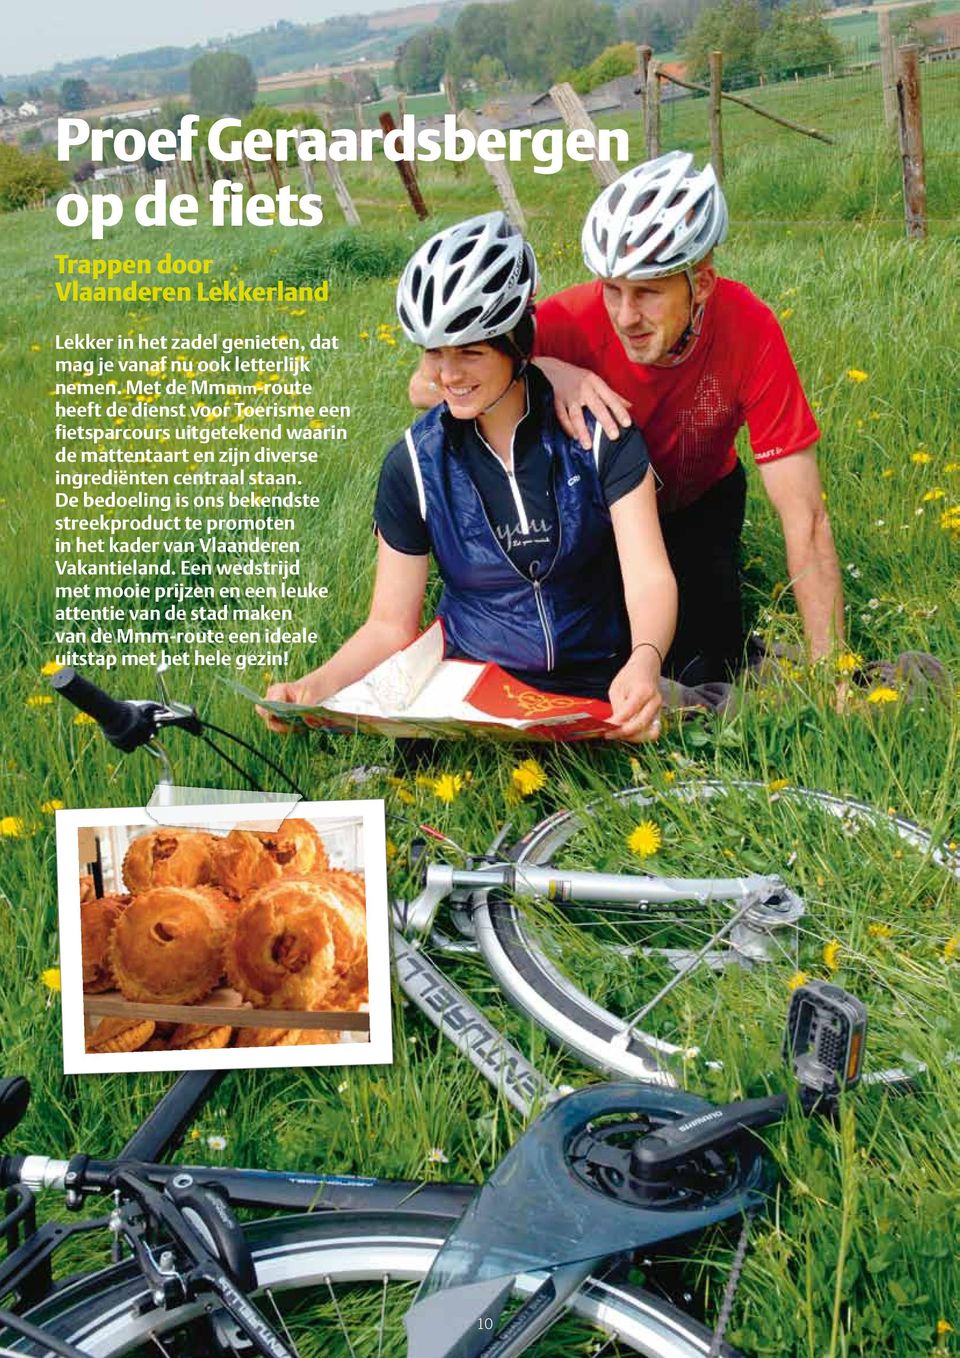 Met de Mmmm-route heeft de dienst voor Toerisme een fietsparcours uitgetekend waarin de mattentaart en zijn diverse ingrediënten